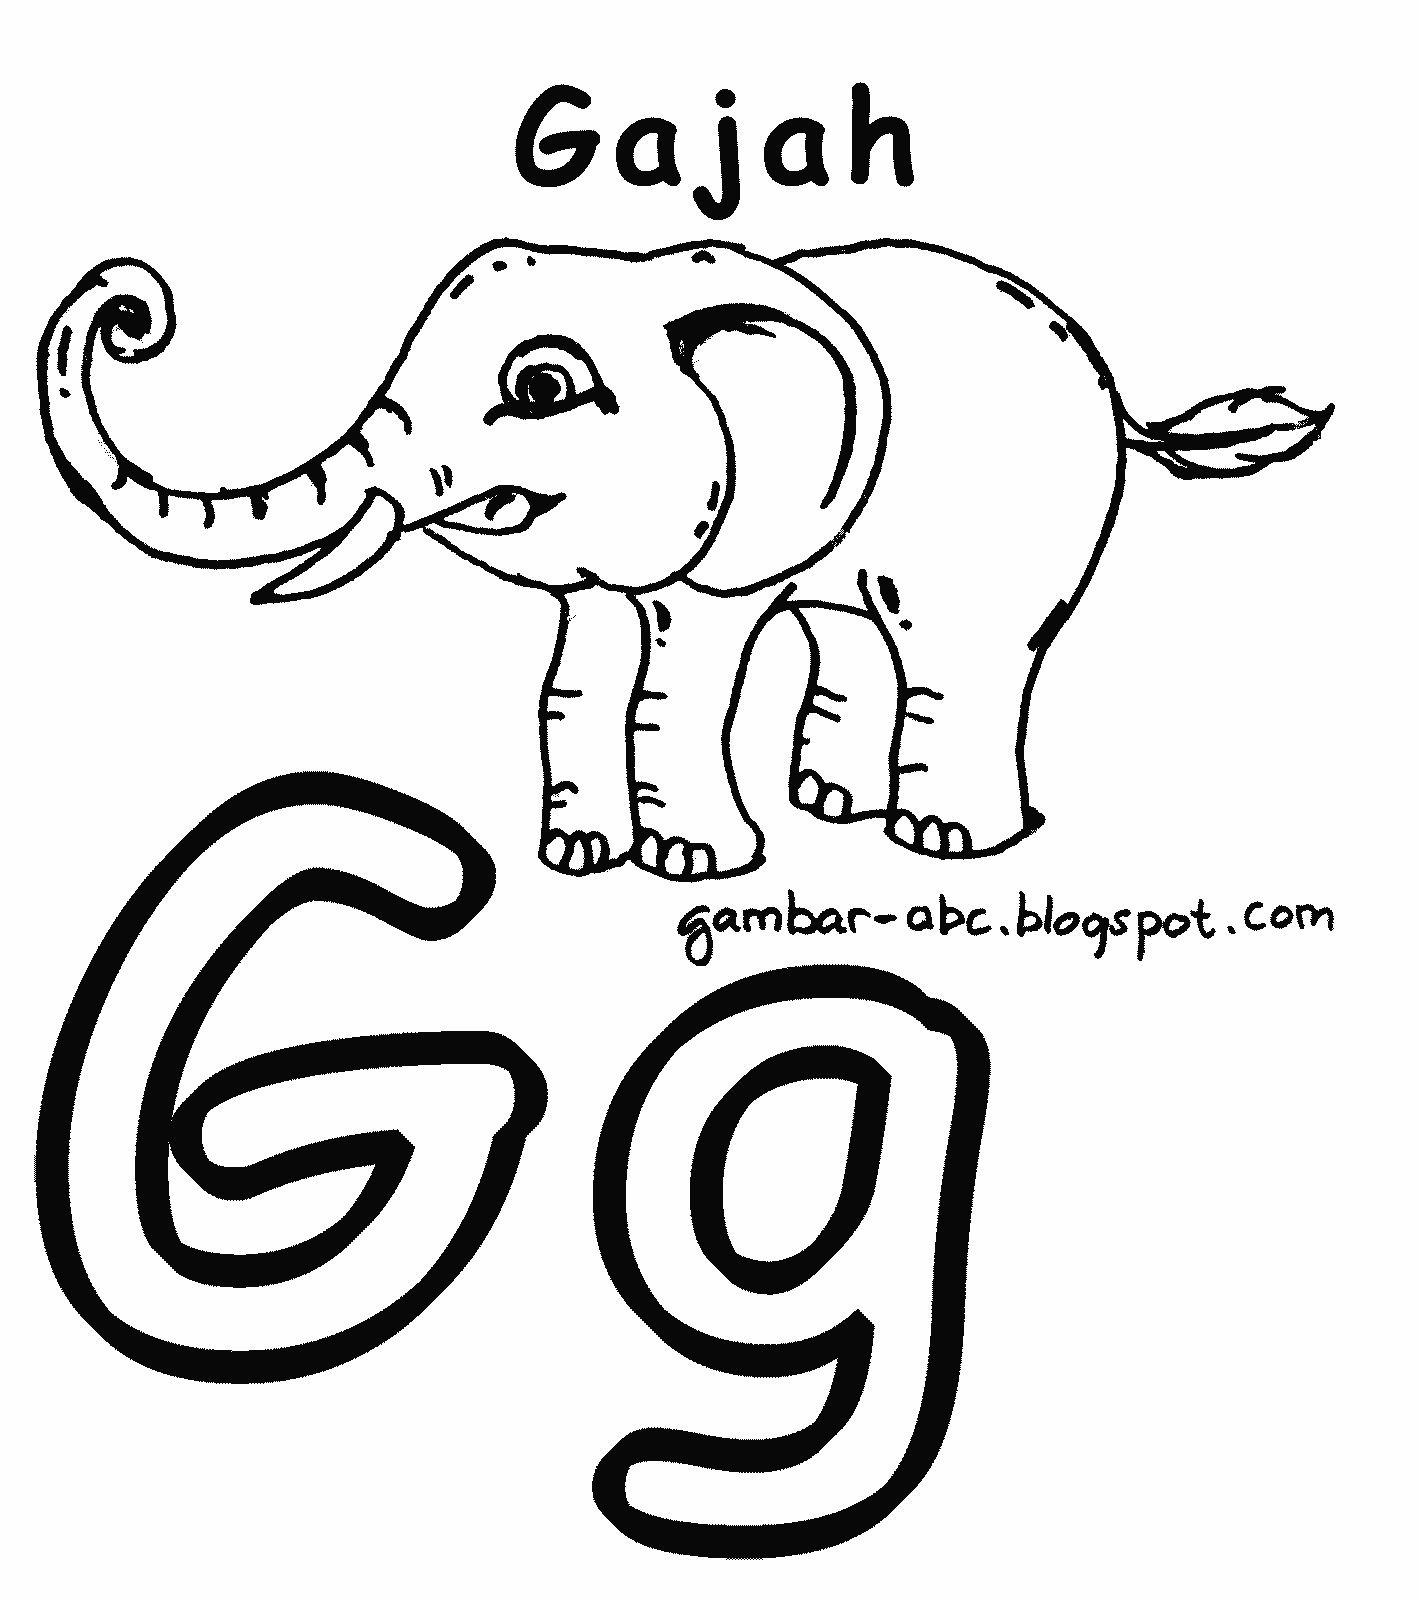 Mewarnai Huruf "G" Gambar Gajah - Contoh Gambar Mewarnai